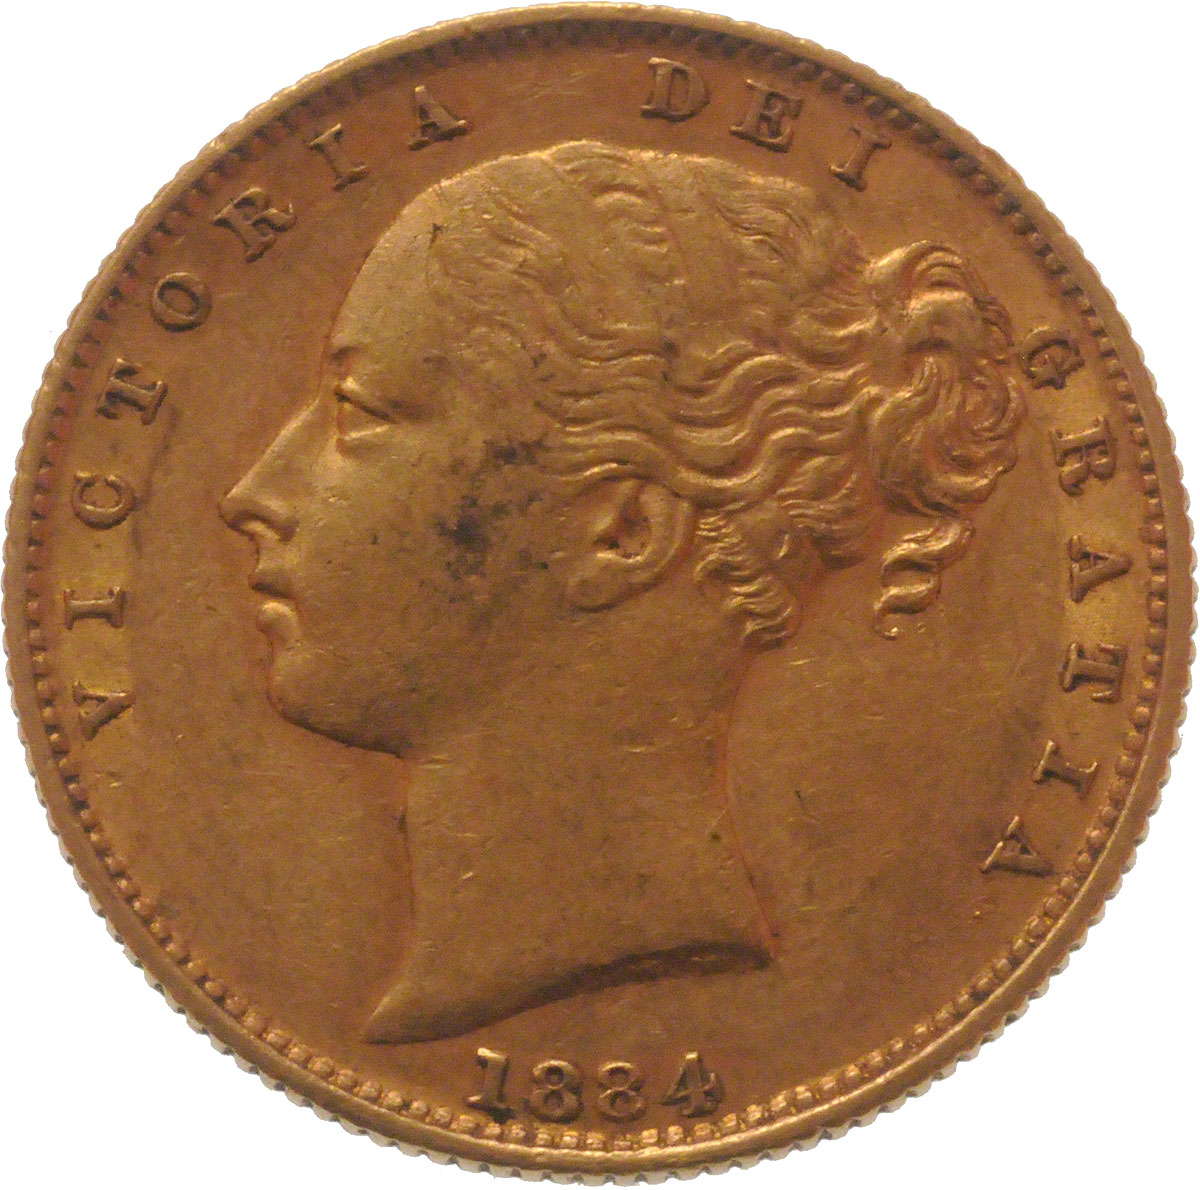 1884 Βικτώρια – Θυρεός (Νομισματοκοπείο Σίδνεϊ)